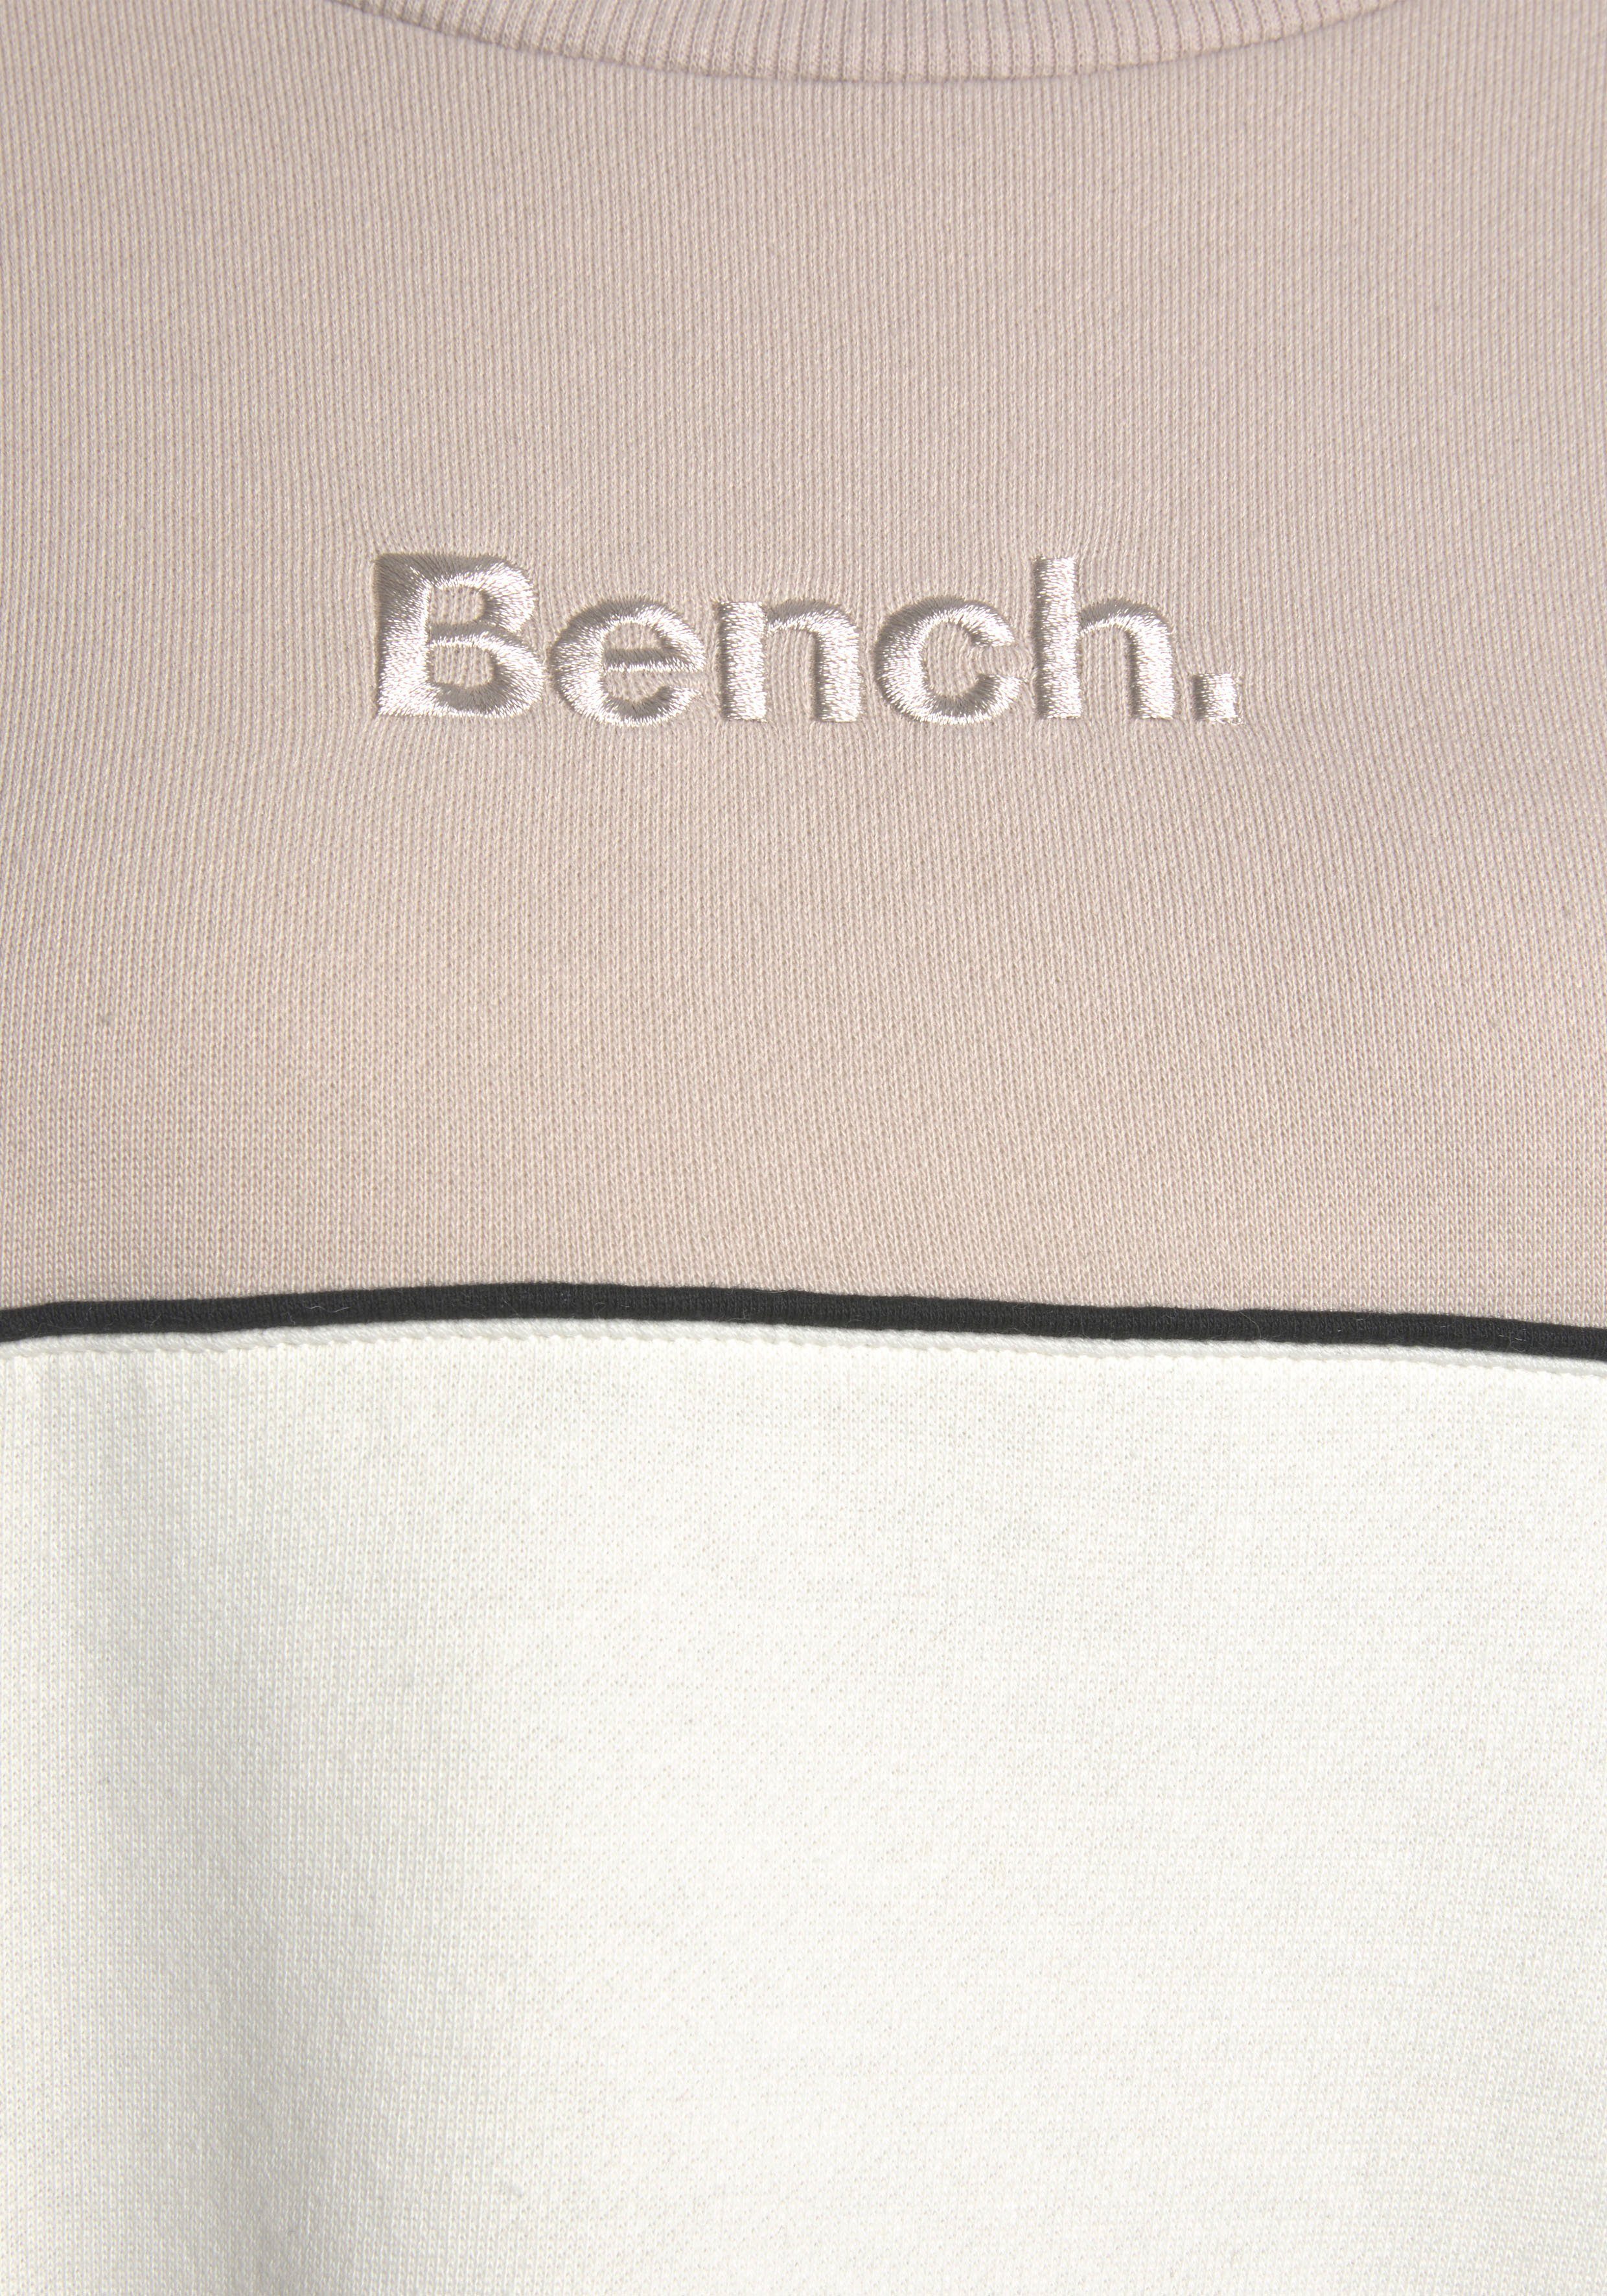 Logostickerei Bench. Sweatkleid hellbeige-hellbraun mit Farben in zwei